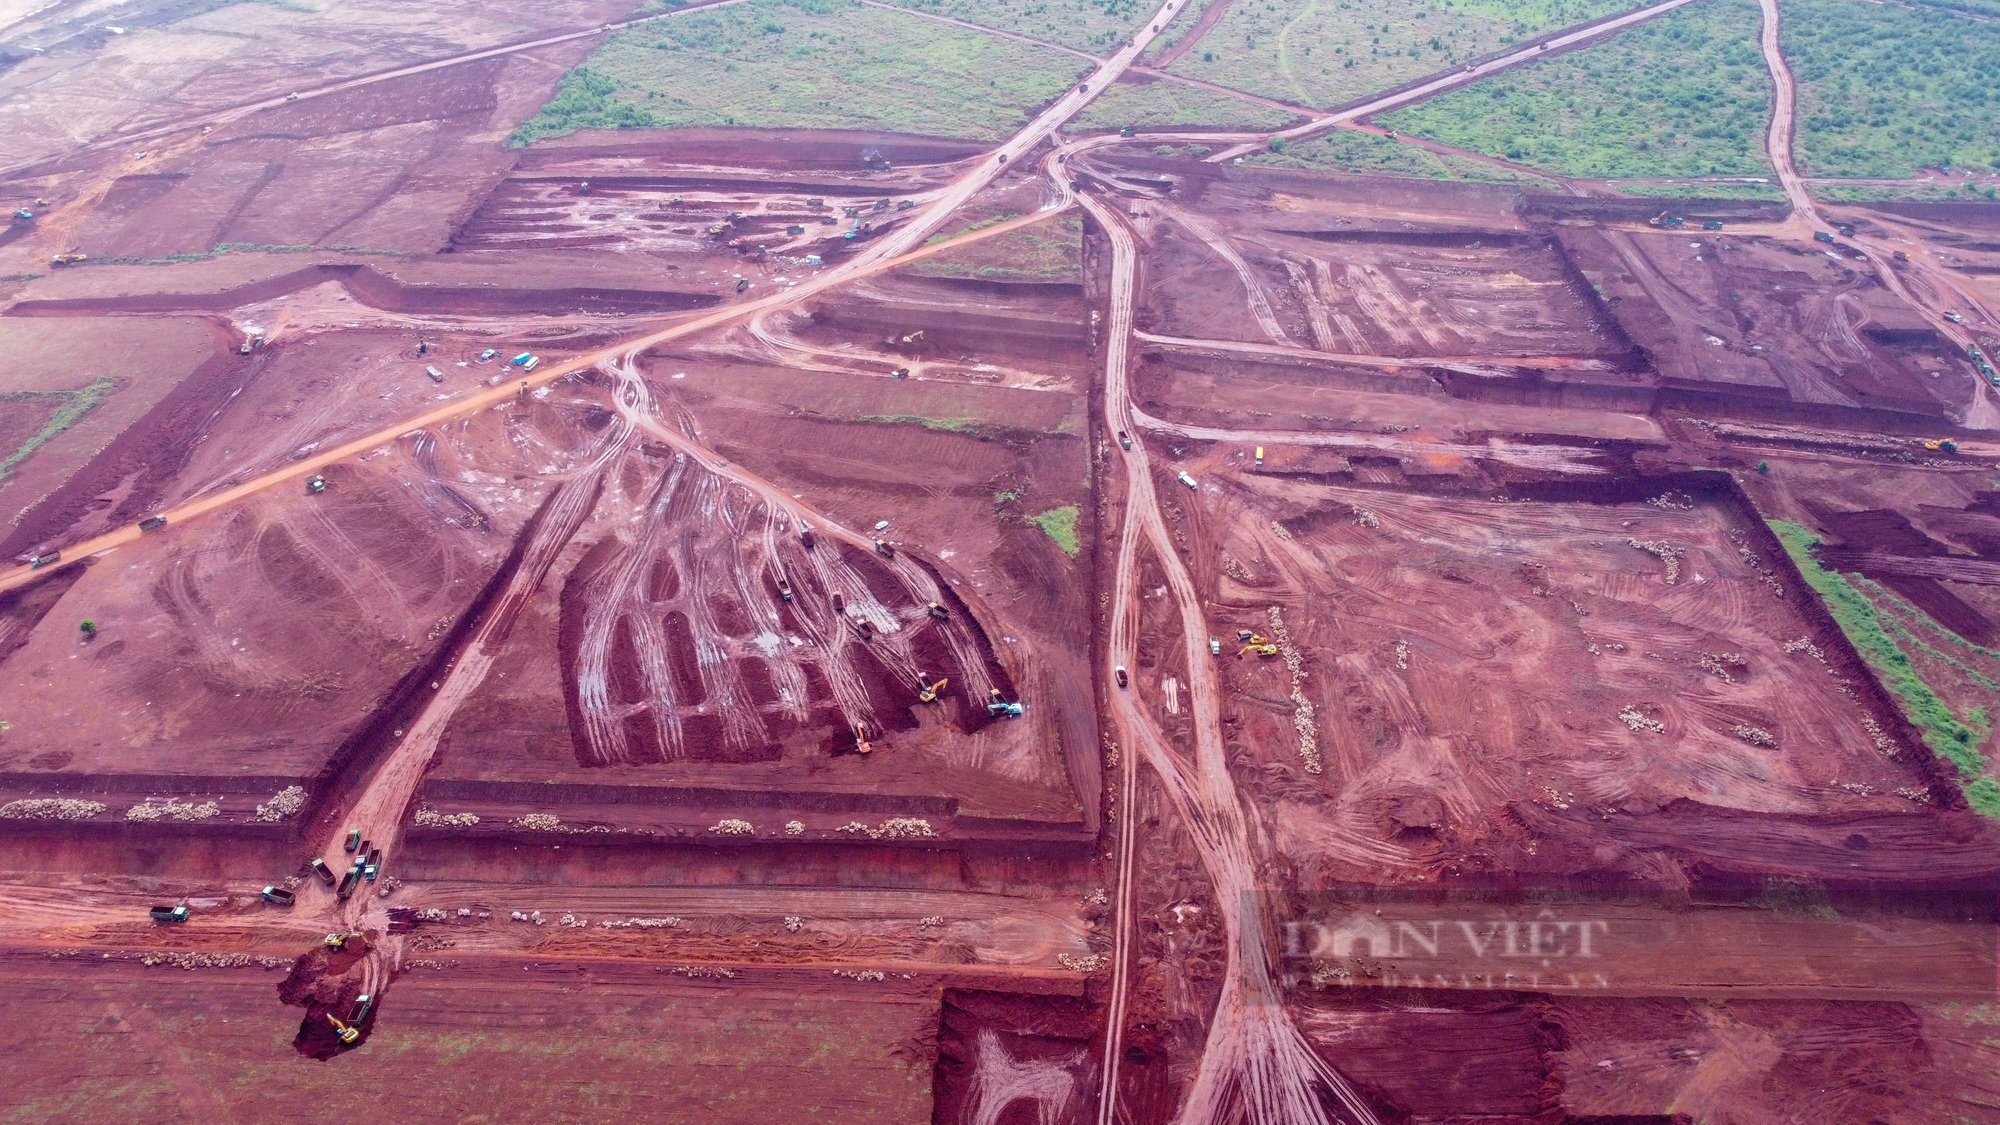 Cận cảnh dàn trận trên nền đất đỏ tại dự án sân bay Long Thành rộng 5.000 ha - Ảnh 10.